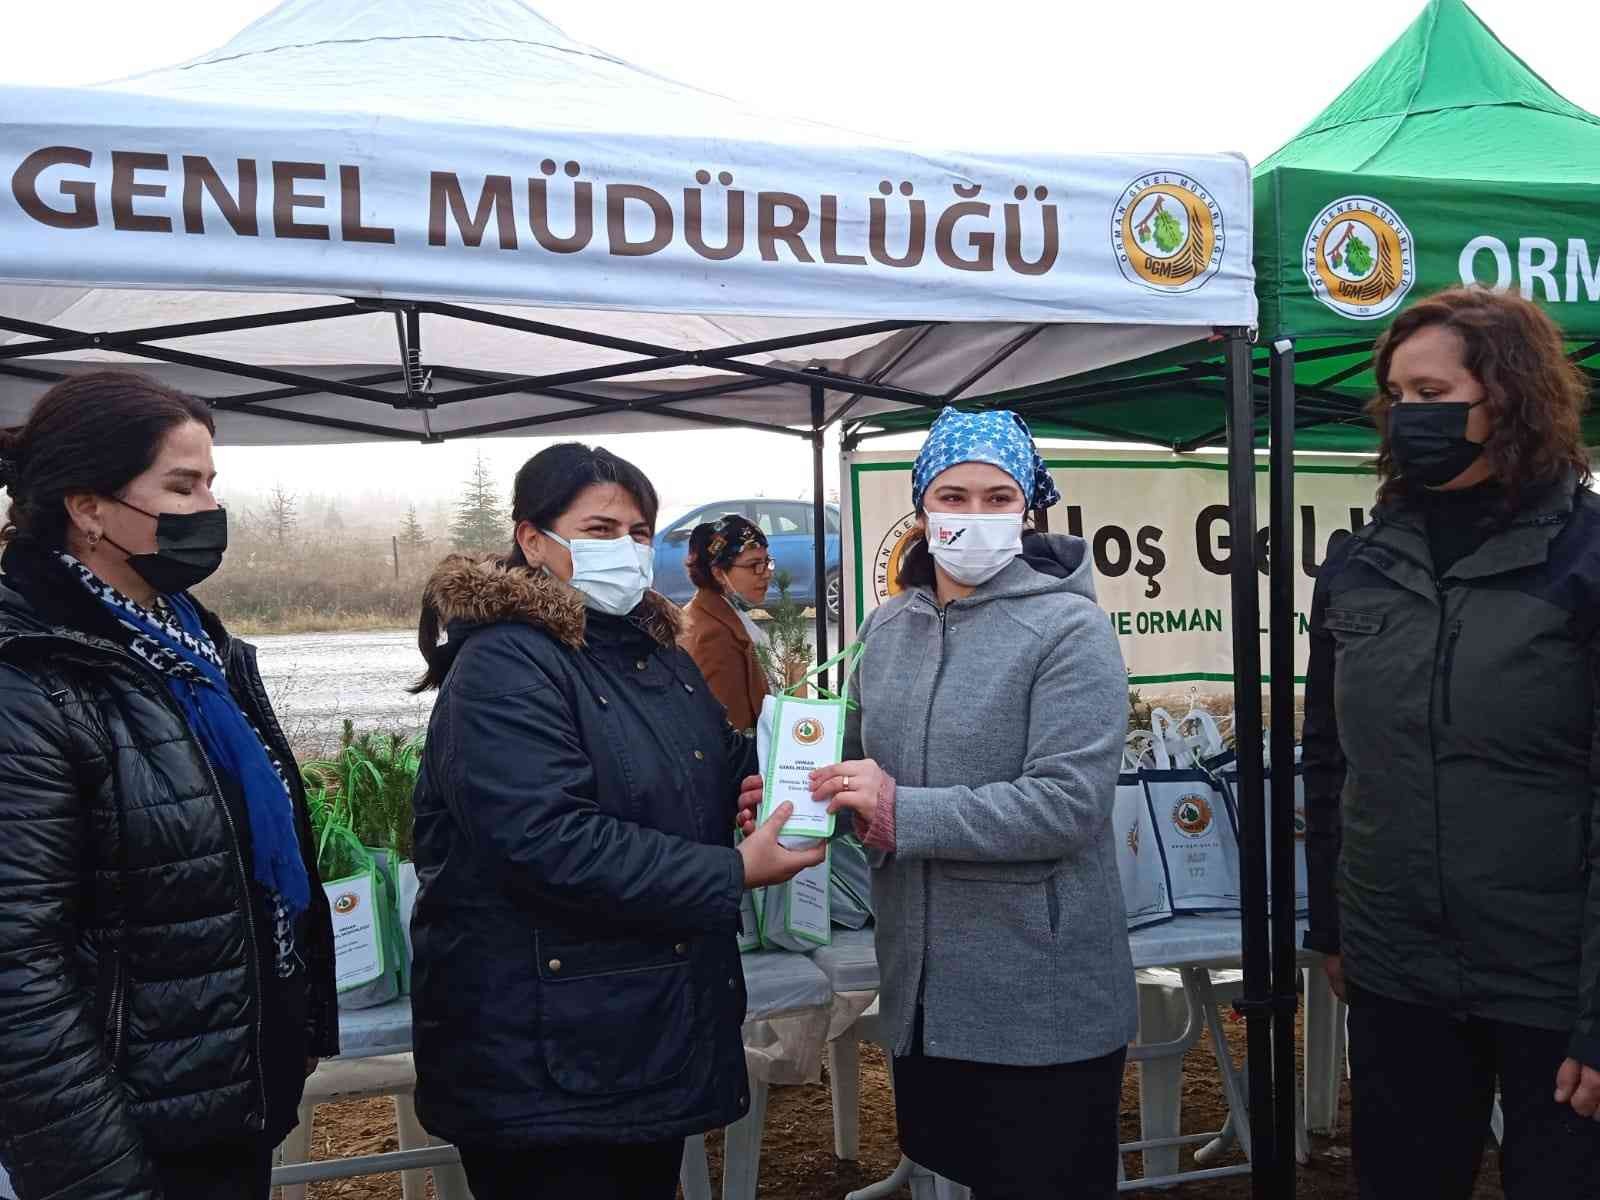 Edirne’de Tıbbi Aromatik Bitkiler Ormanı kuruluyor #edirne